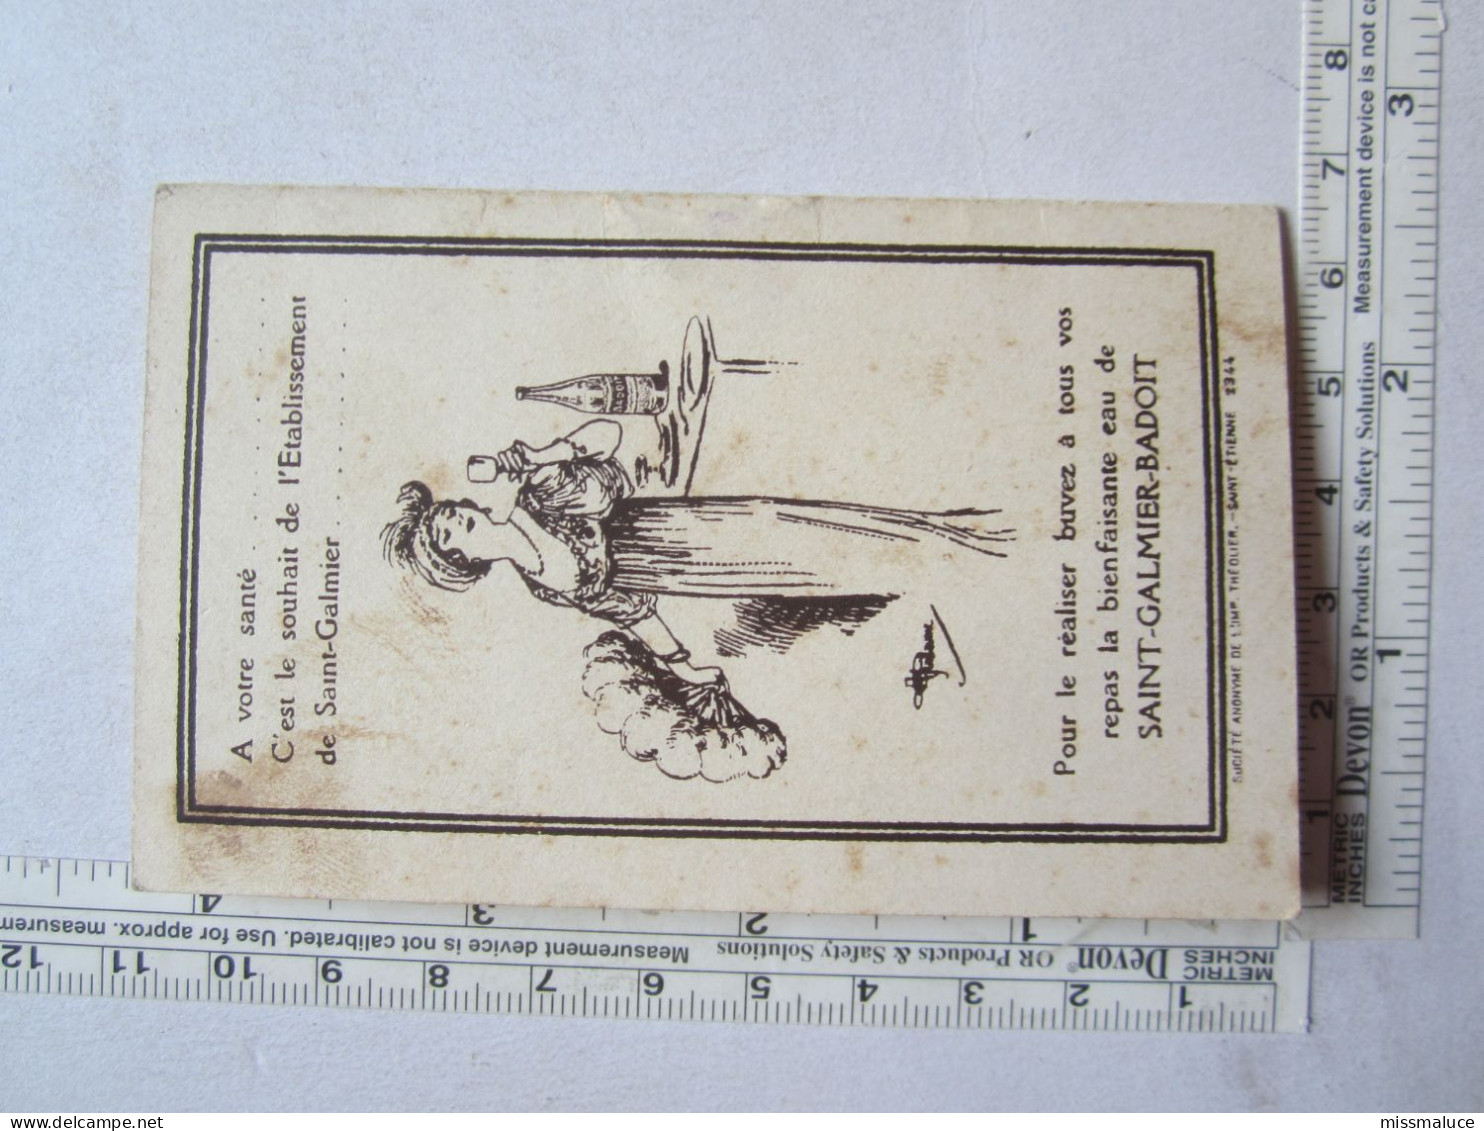 Publicité Petit Calendrier 1927 Saint Galmier Badoit Eau Minérale 42 Haute Loire - Petit Format : 1921-40